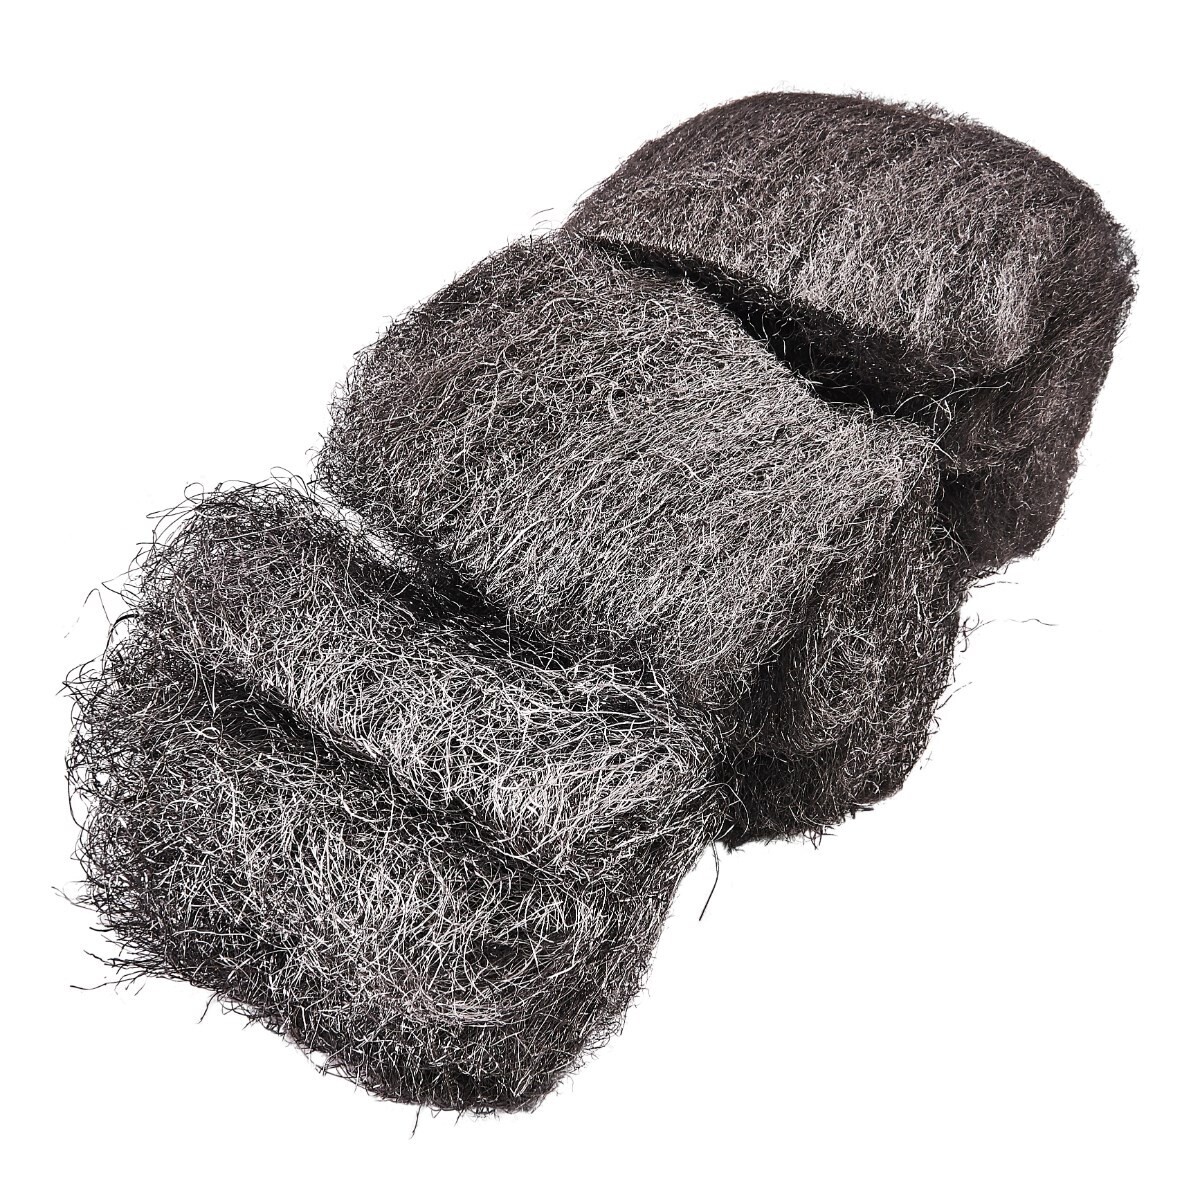 Multi-grade wire wool